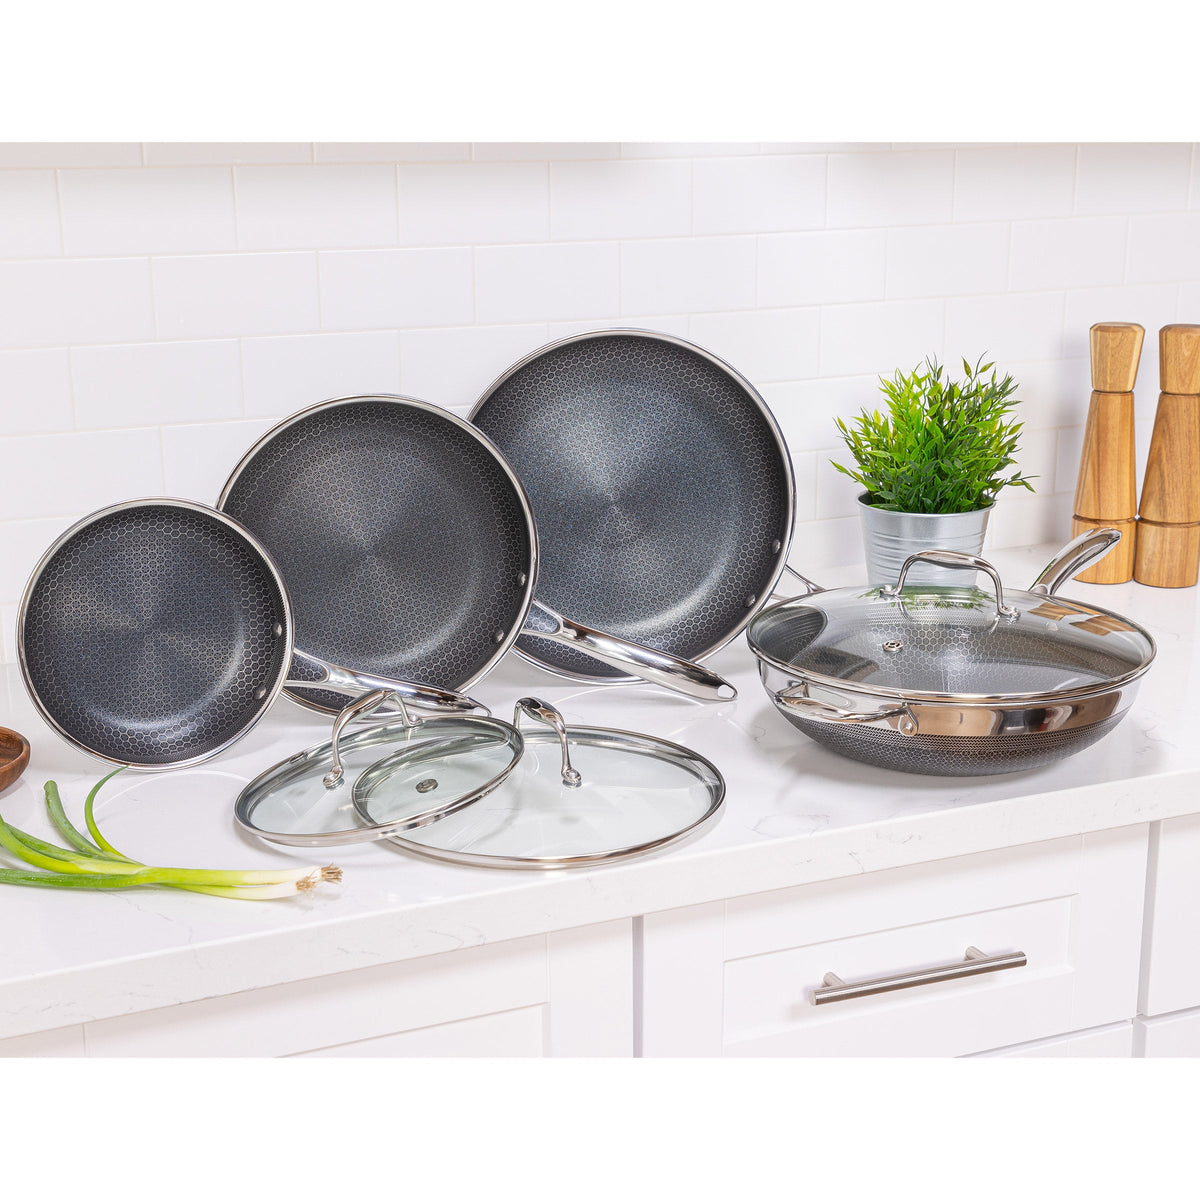 HexClad 7-piece Cookware Set Image